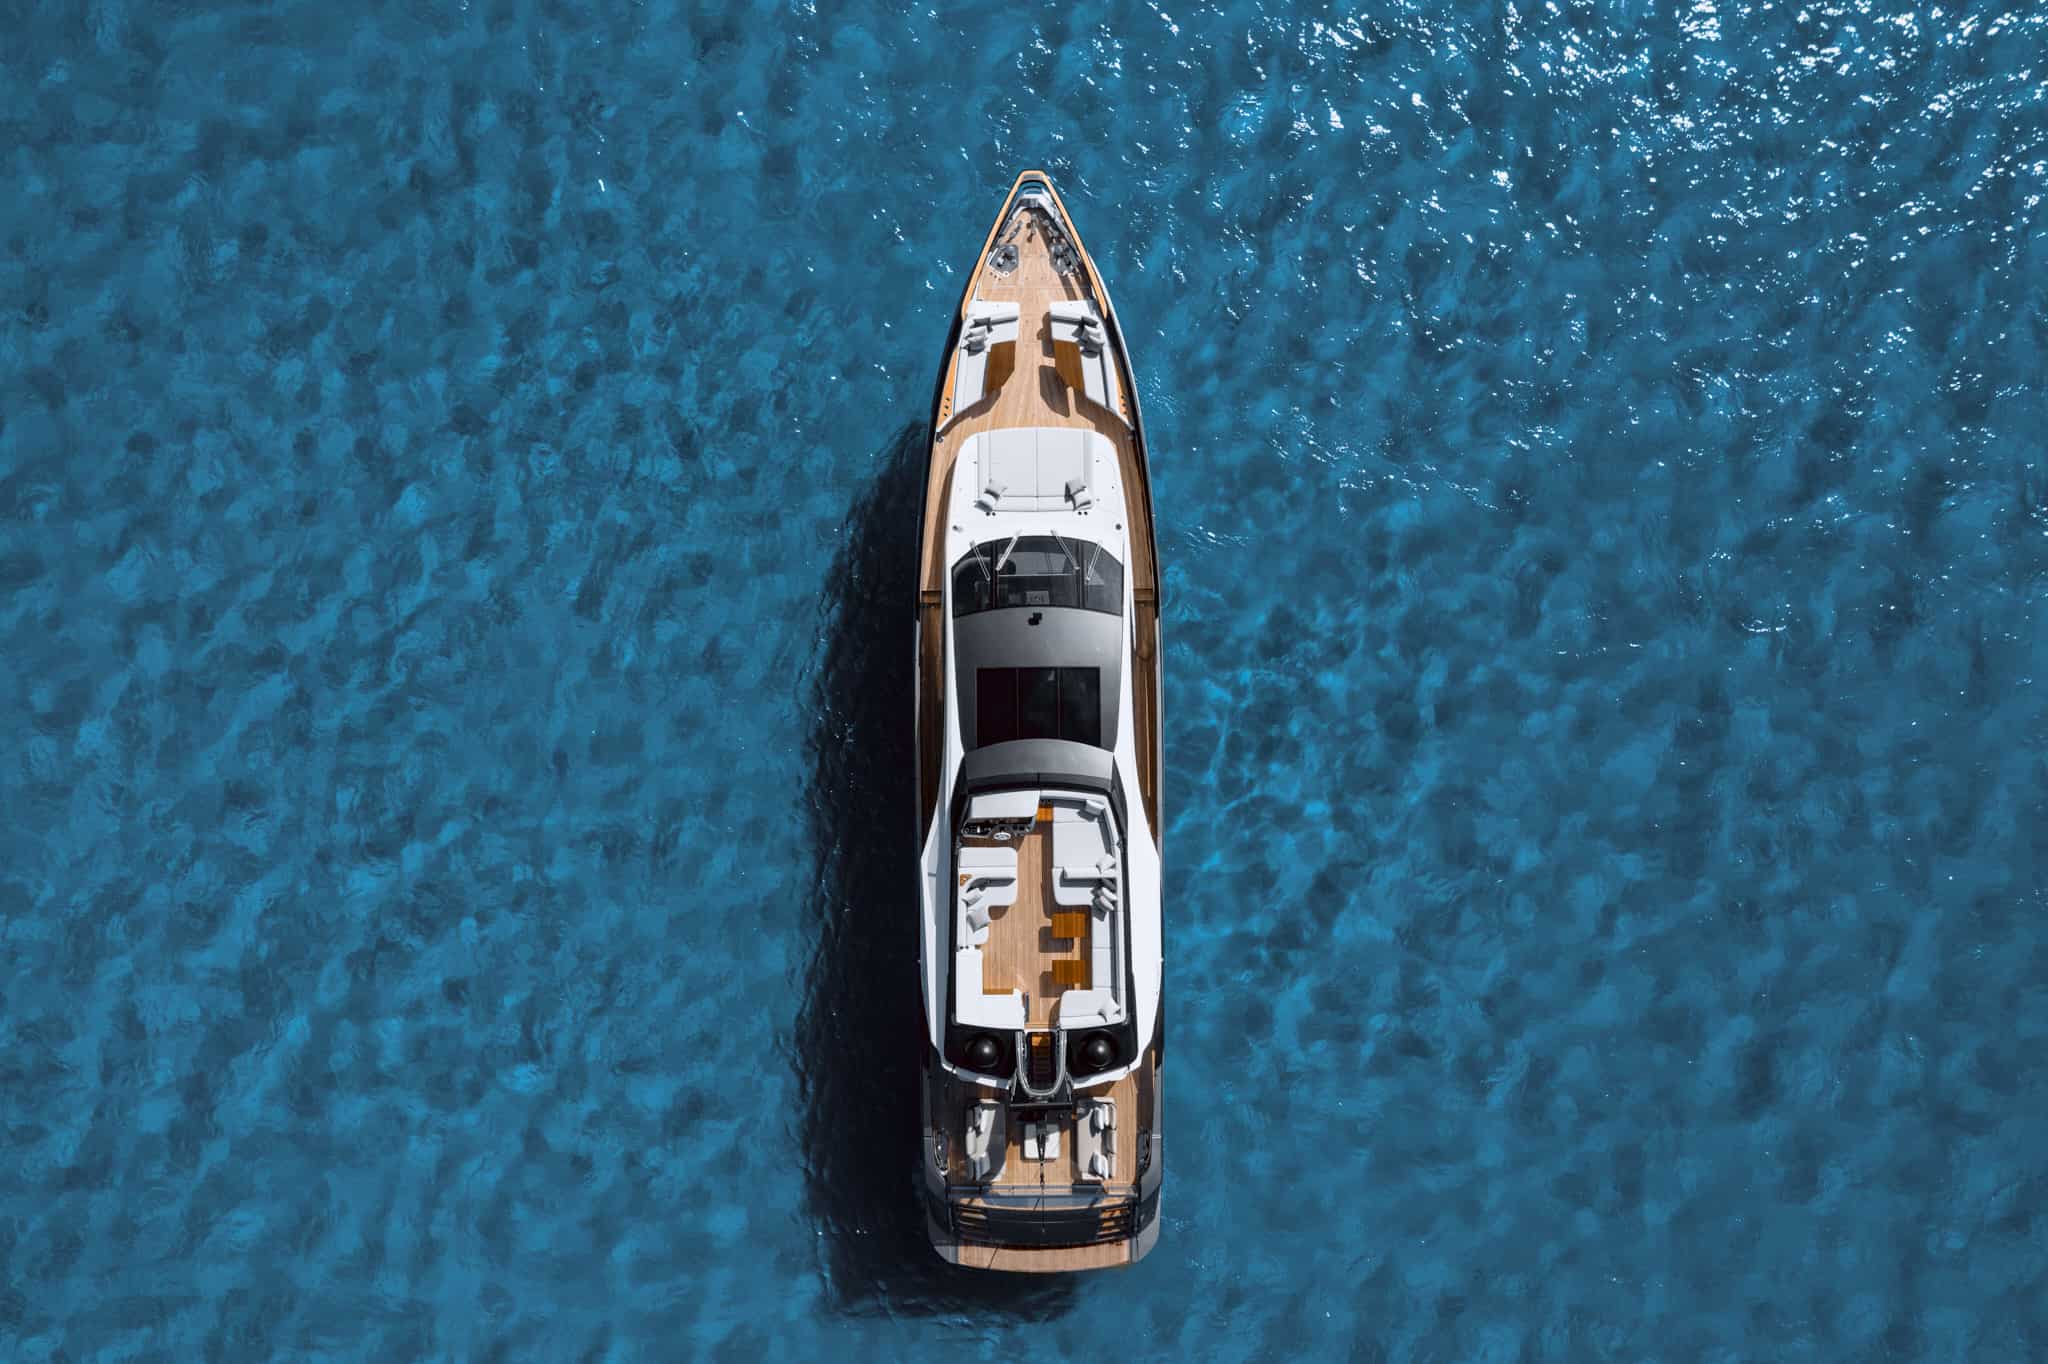 Azimut S10 yacht - 95 foot yacht, top yacht | Azimut Yachts